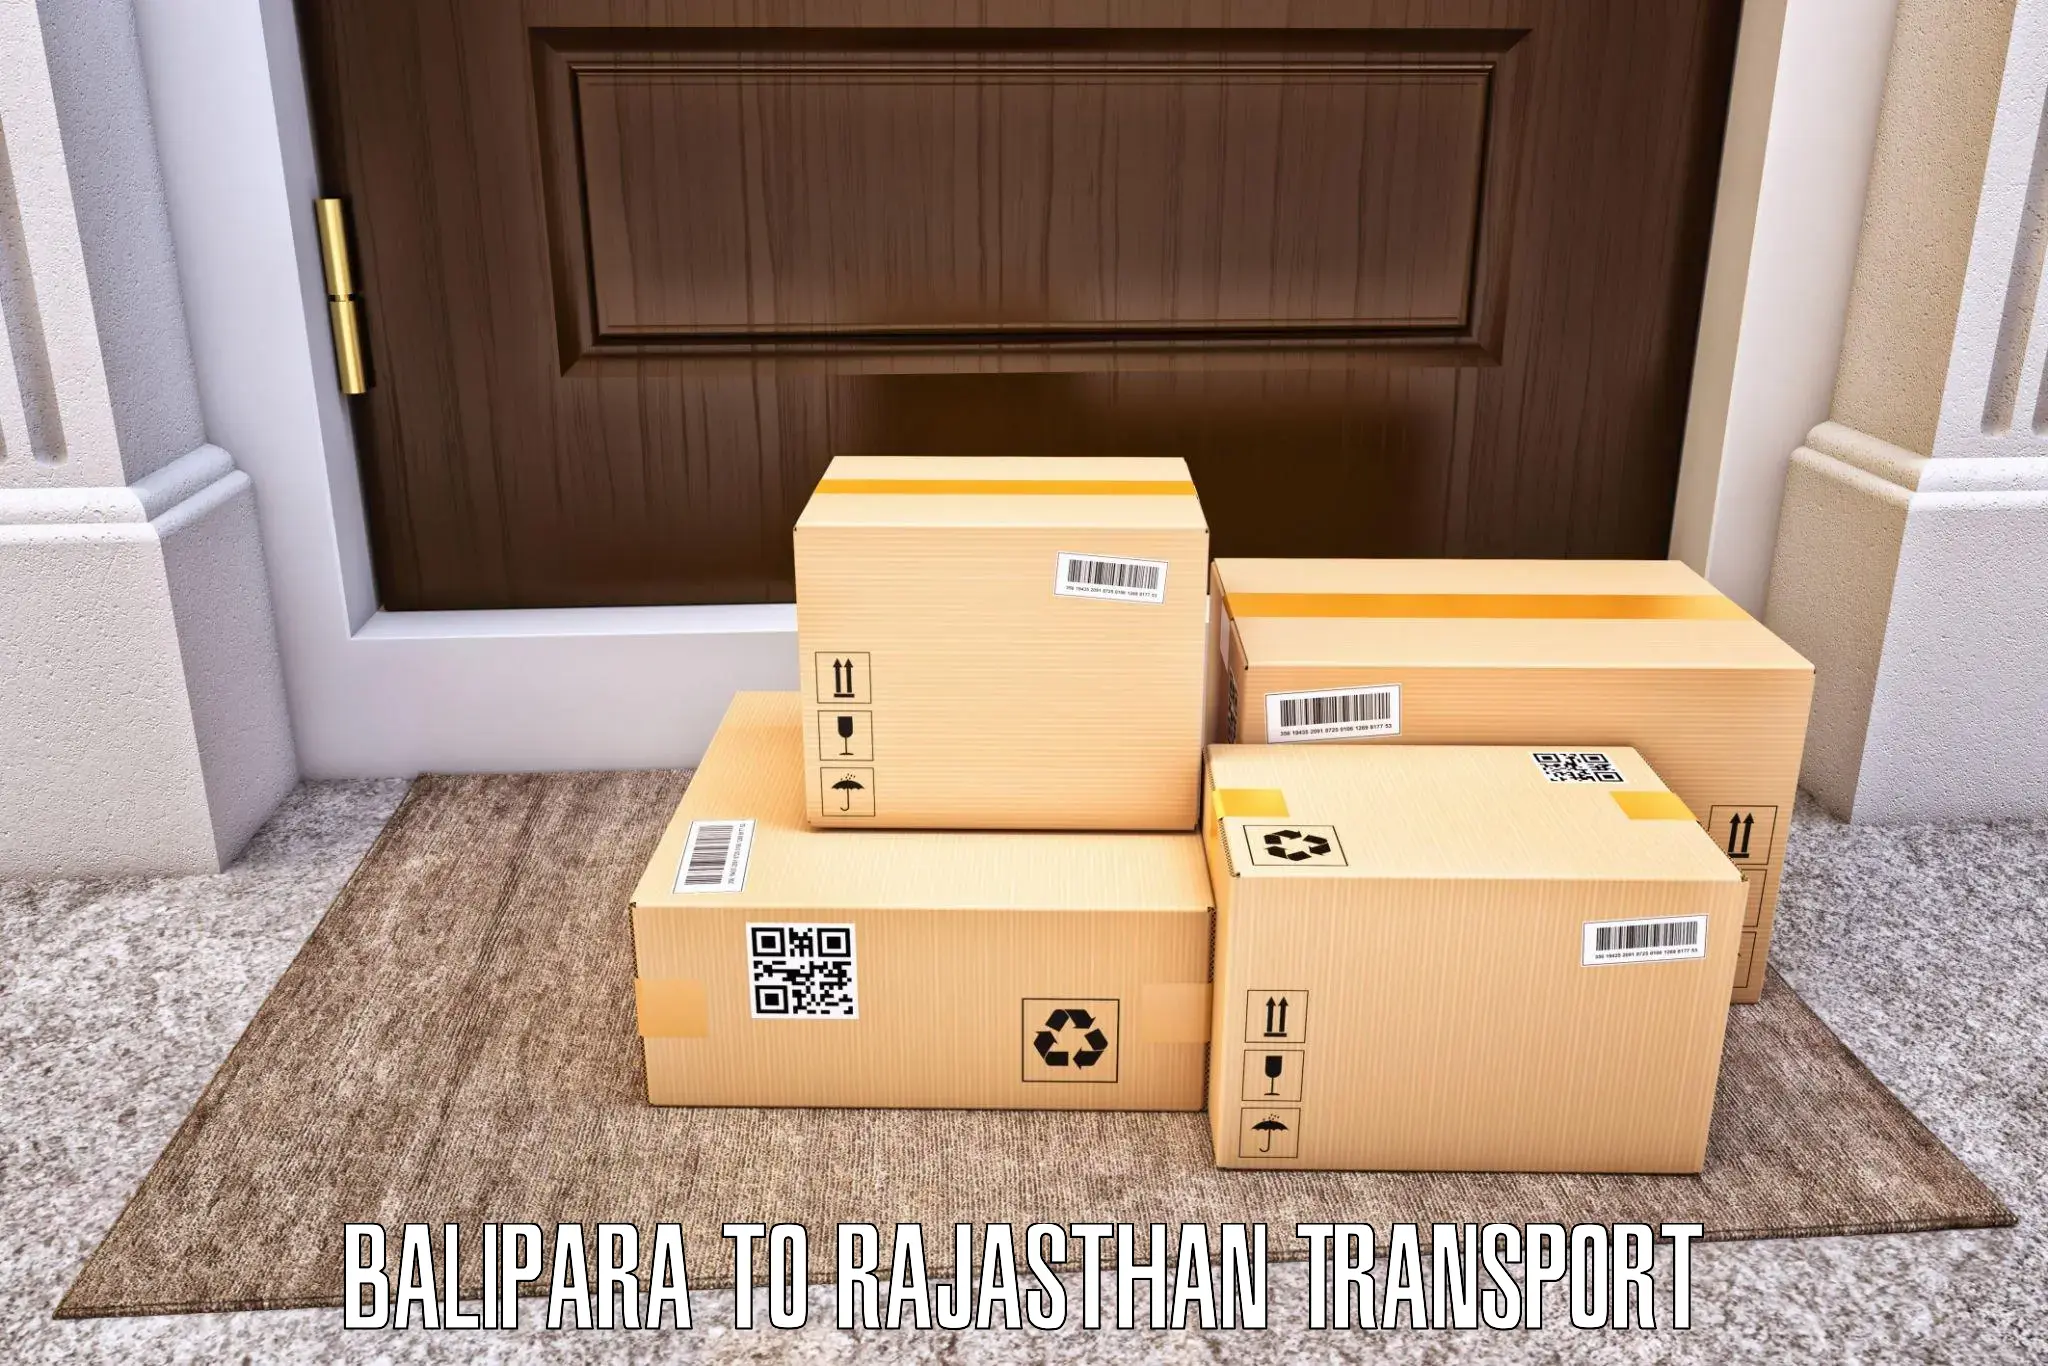 Daily parcel service transport Balipara to Bhilwara